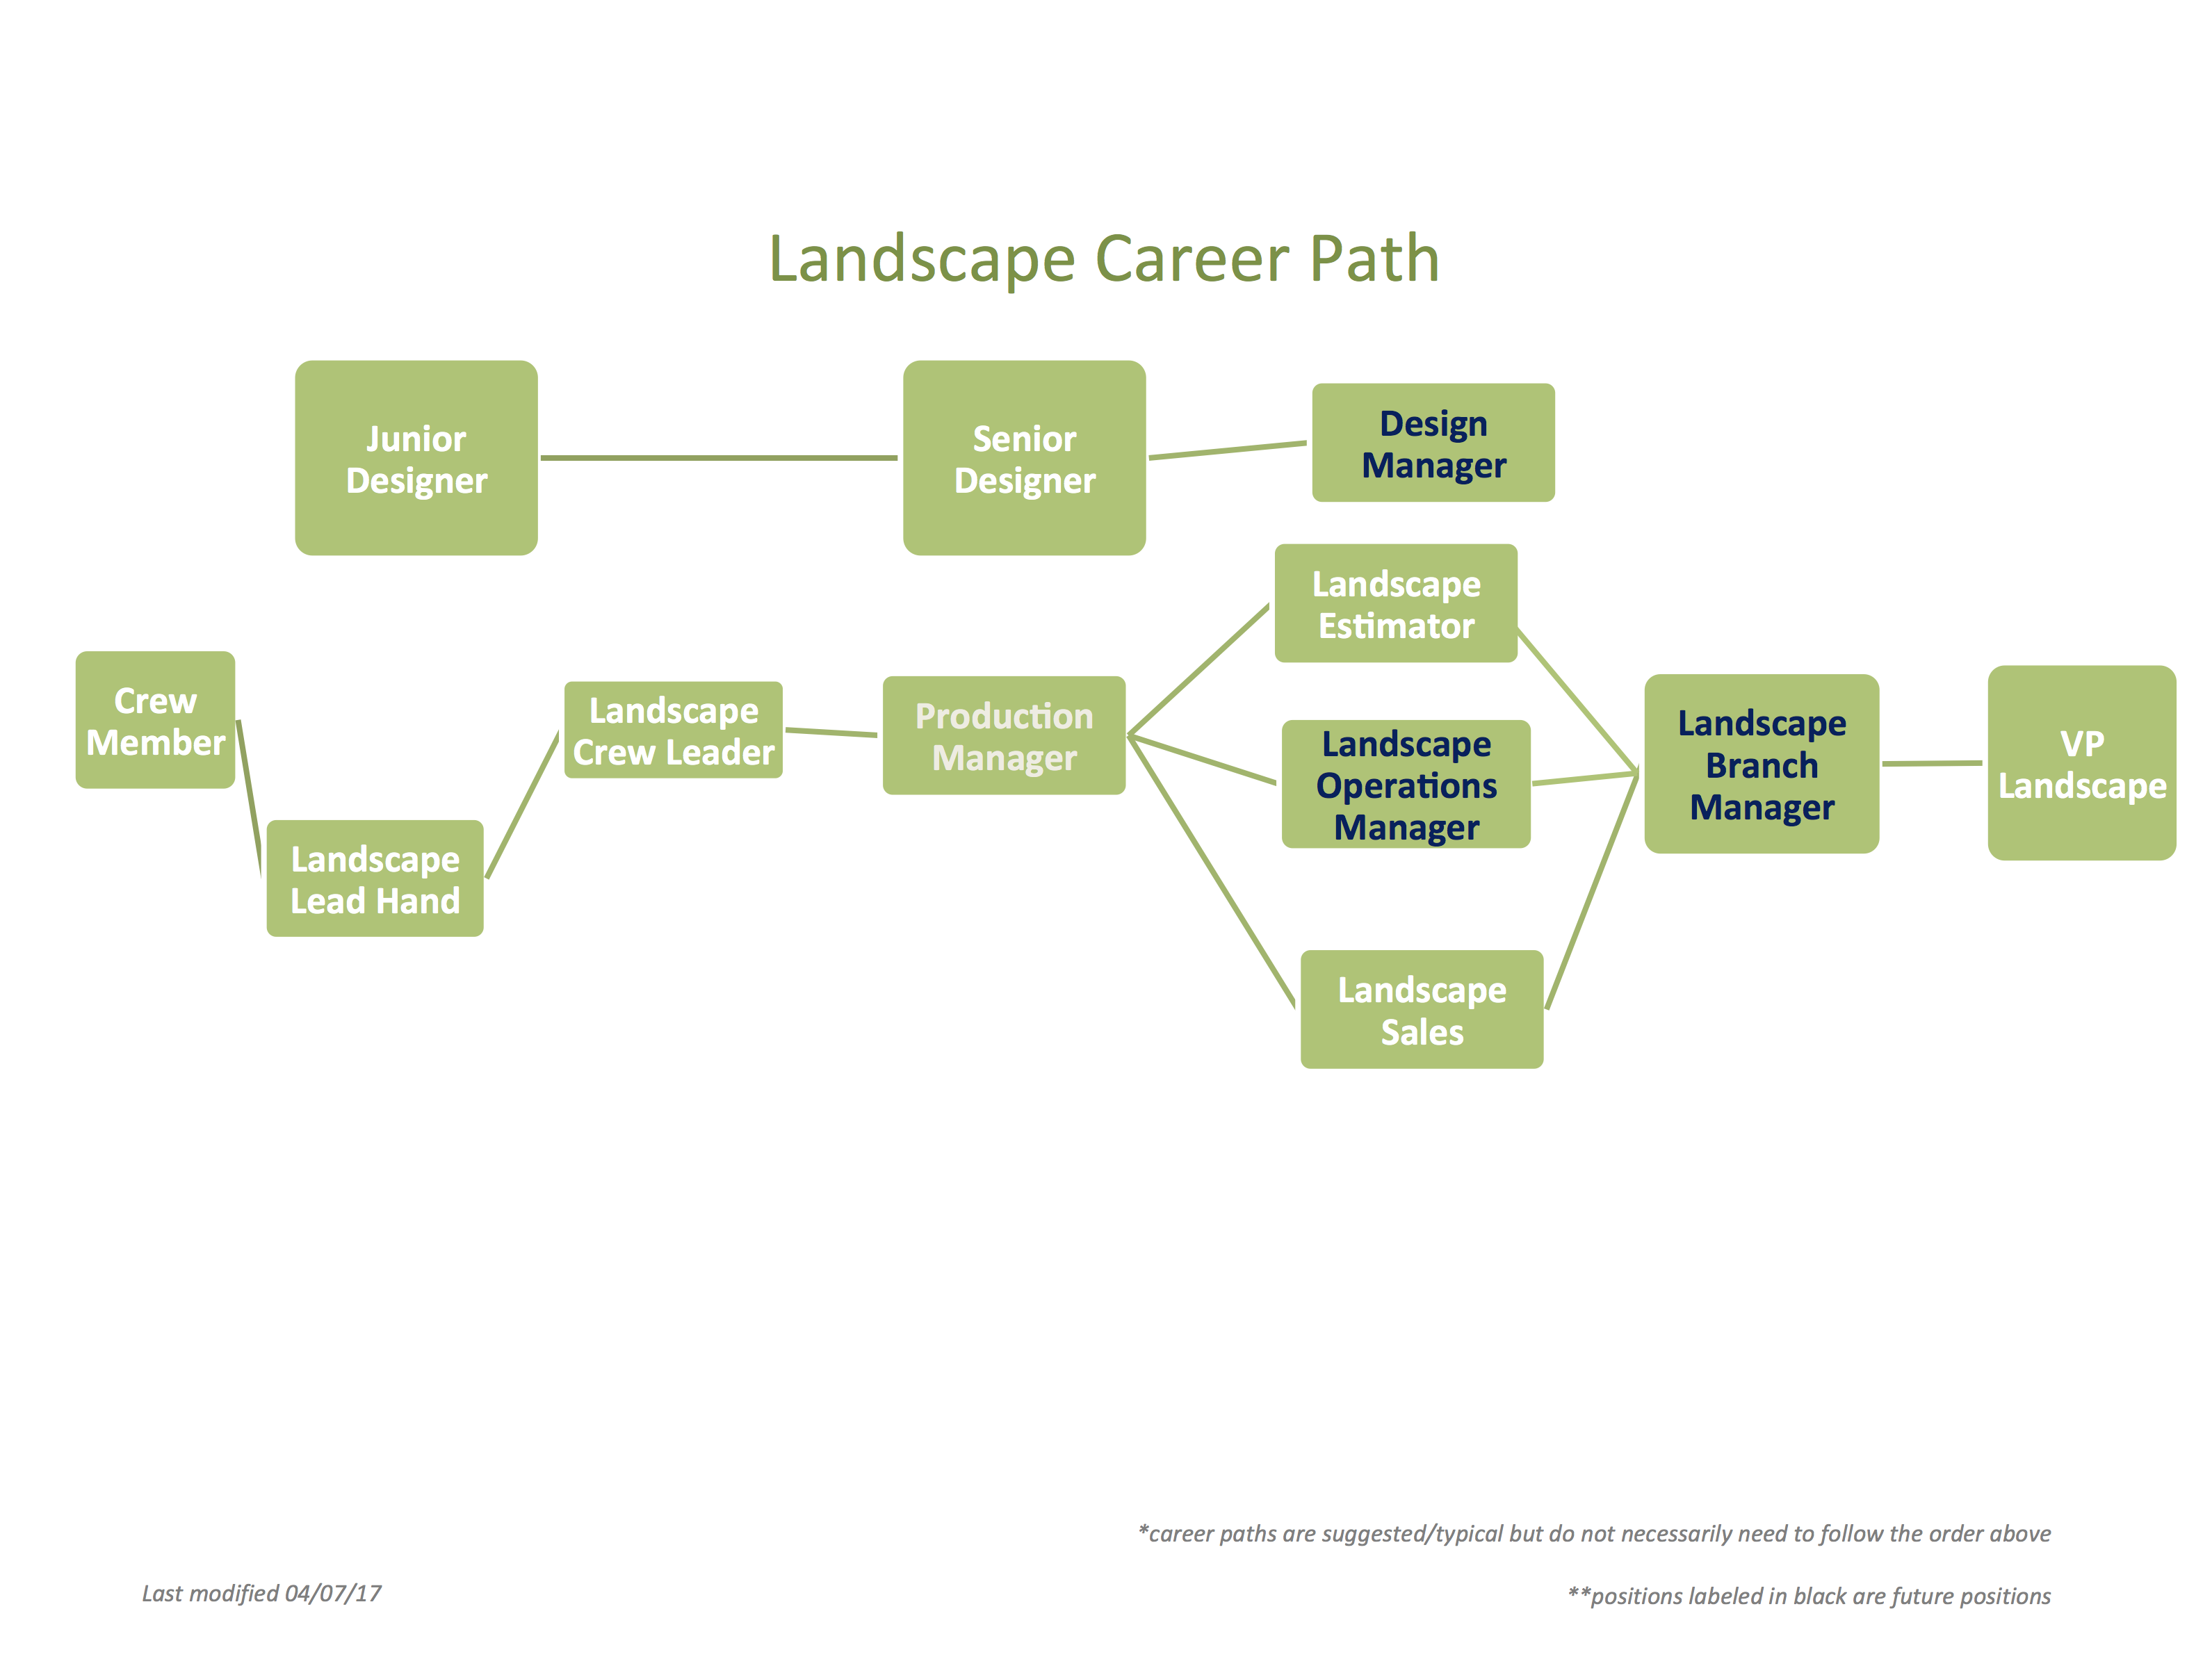 Gelderman Landscape Services, Landscape Architecture Career Path